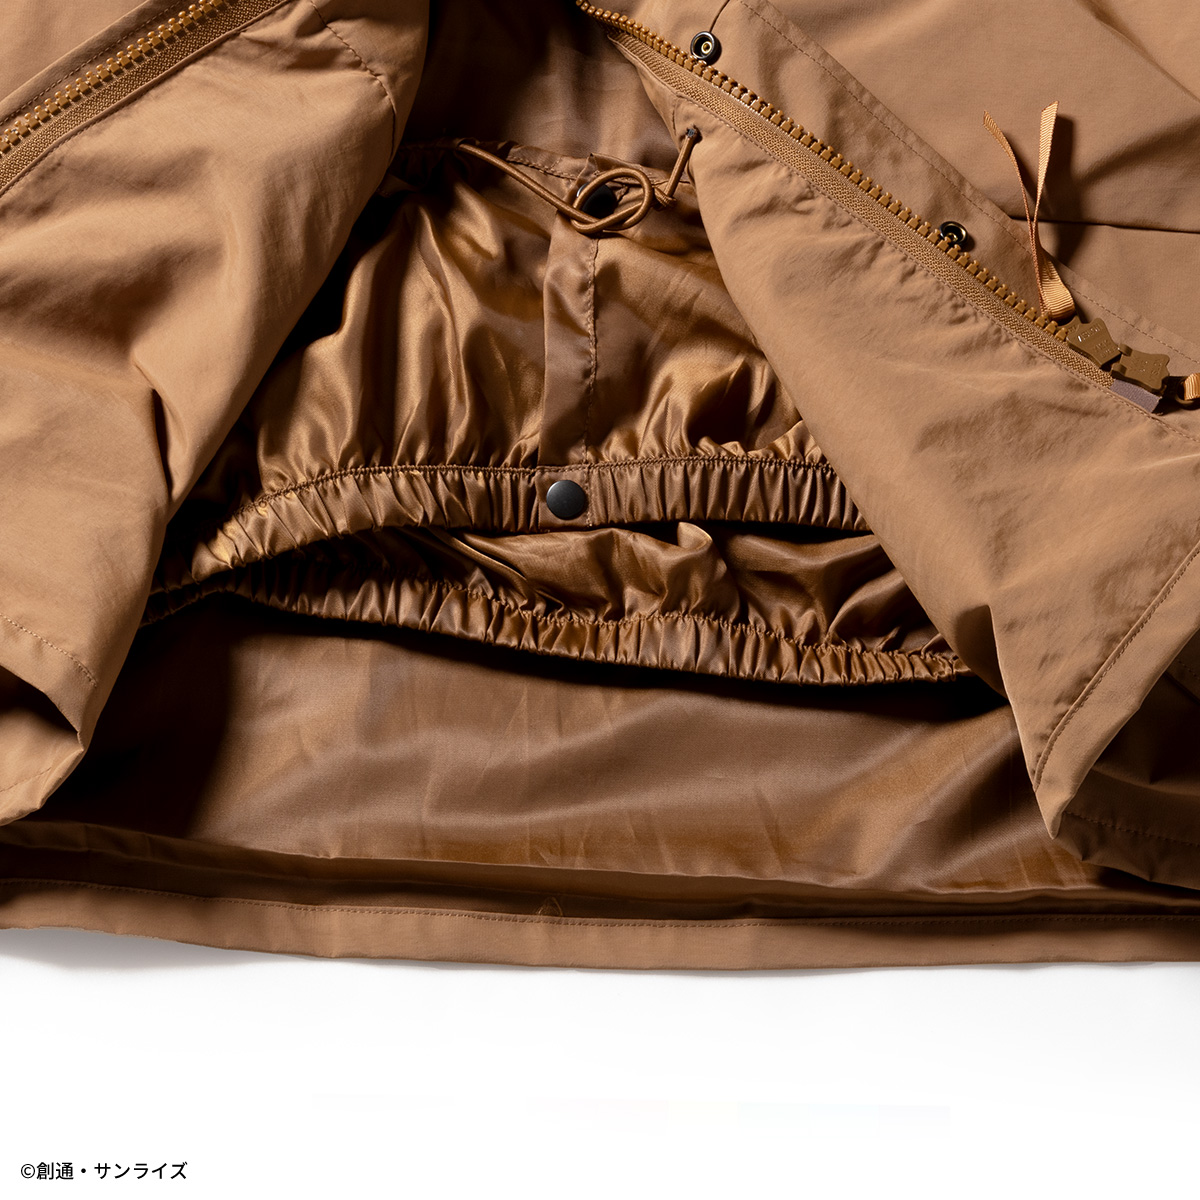 STRICT-G.ARMSより新作のミリタリージャケットが登場!『機動戦士ガンダム 閃光のハサウェイ』『機動戦士ガンダム』から4種のラインナップ!